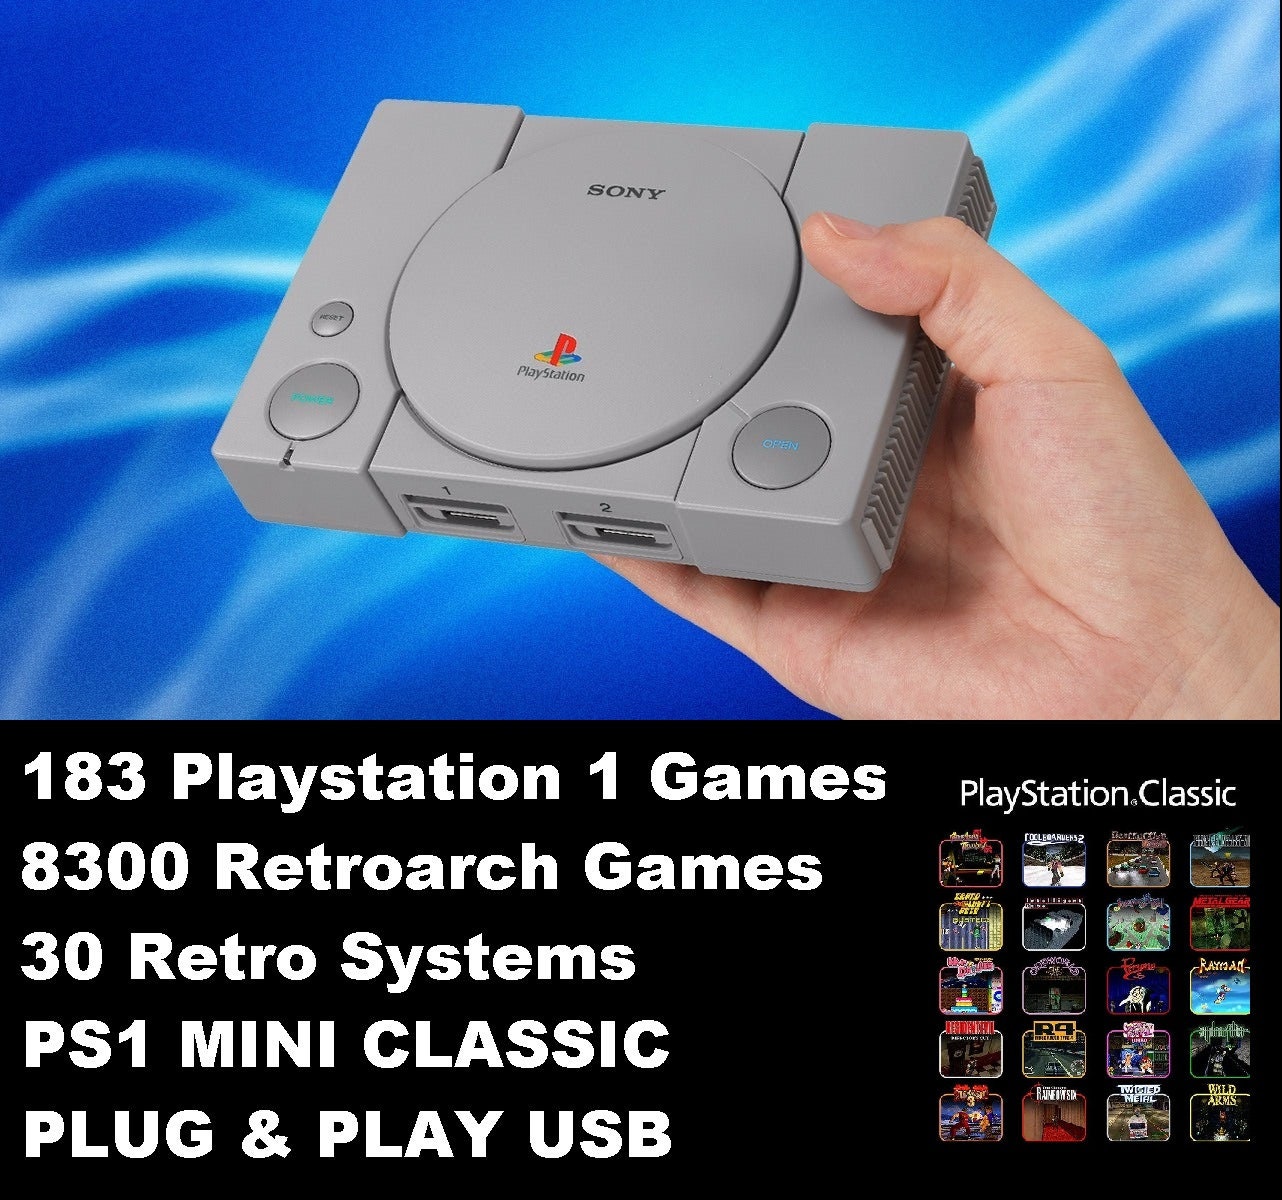 Las mejores ofertas en Sony PlayStation 2-Slim NTSC-U/C (EE. UU./Canadá)  Home Console consolas de videojuegos